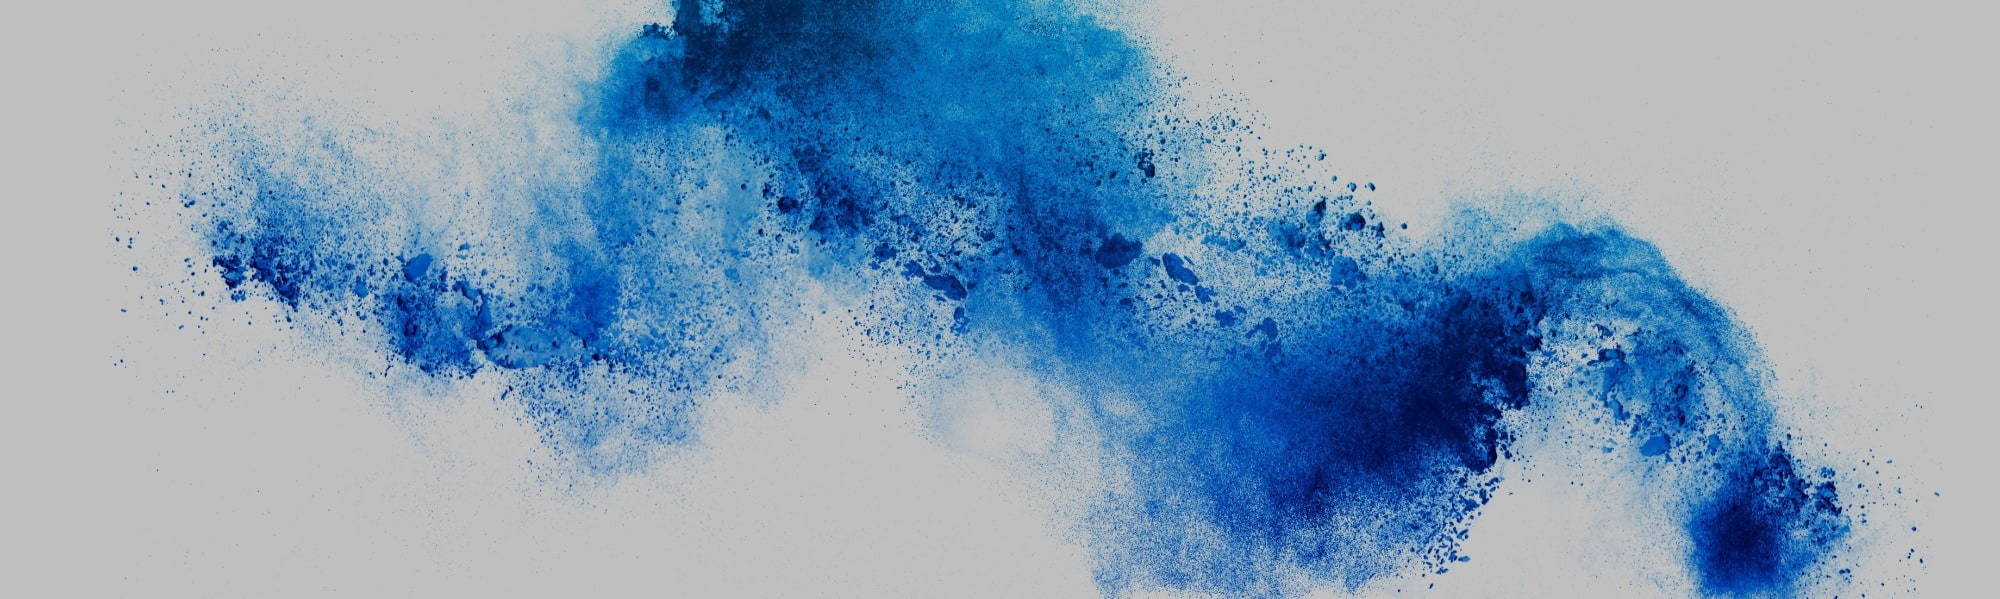 Blue colour splash image